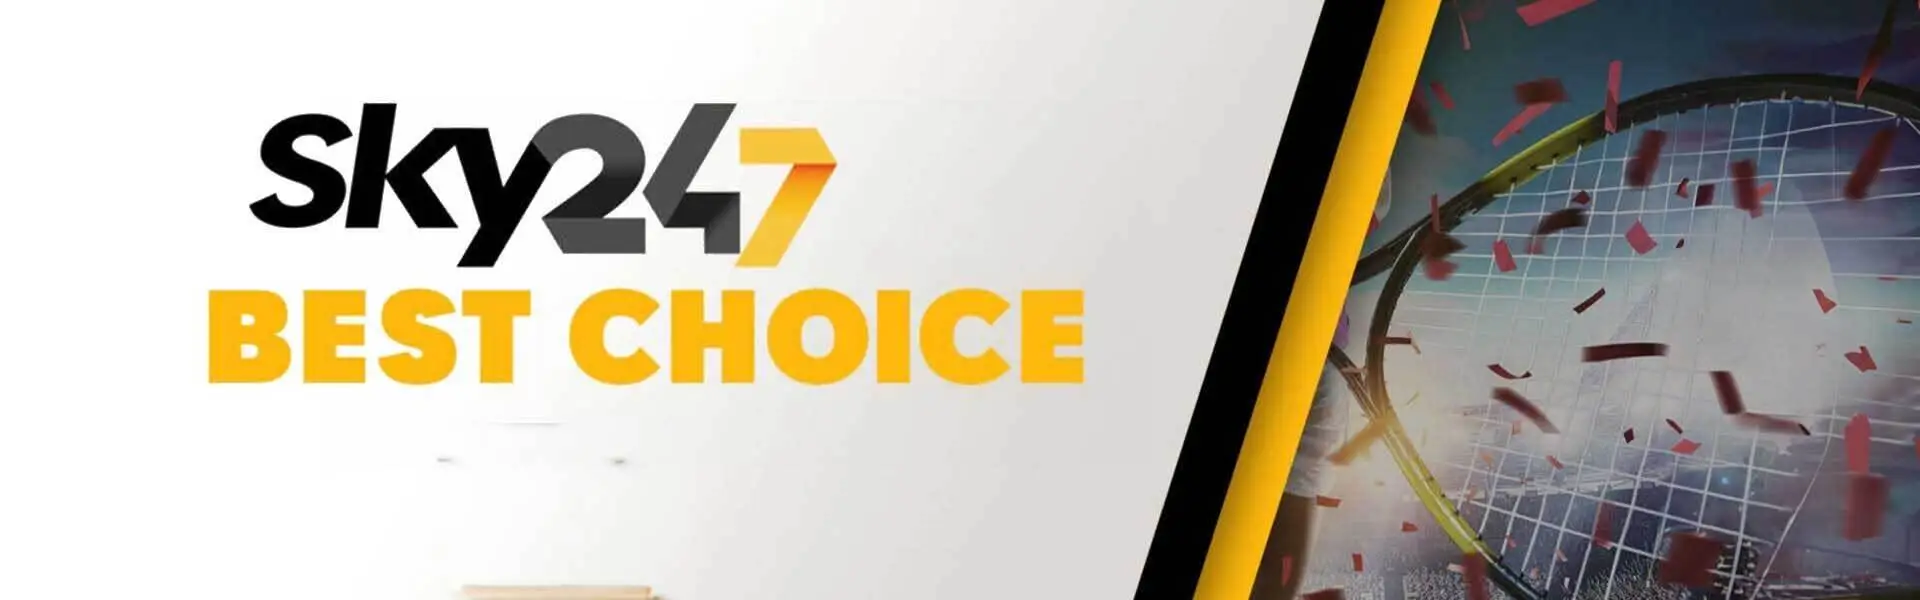 sky247 Best Choice